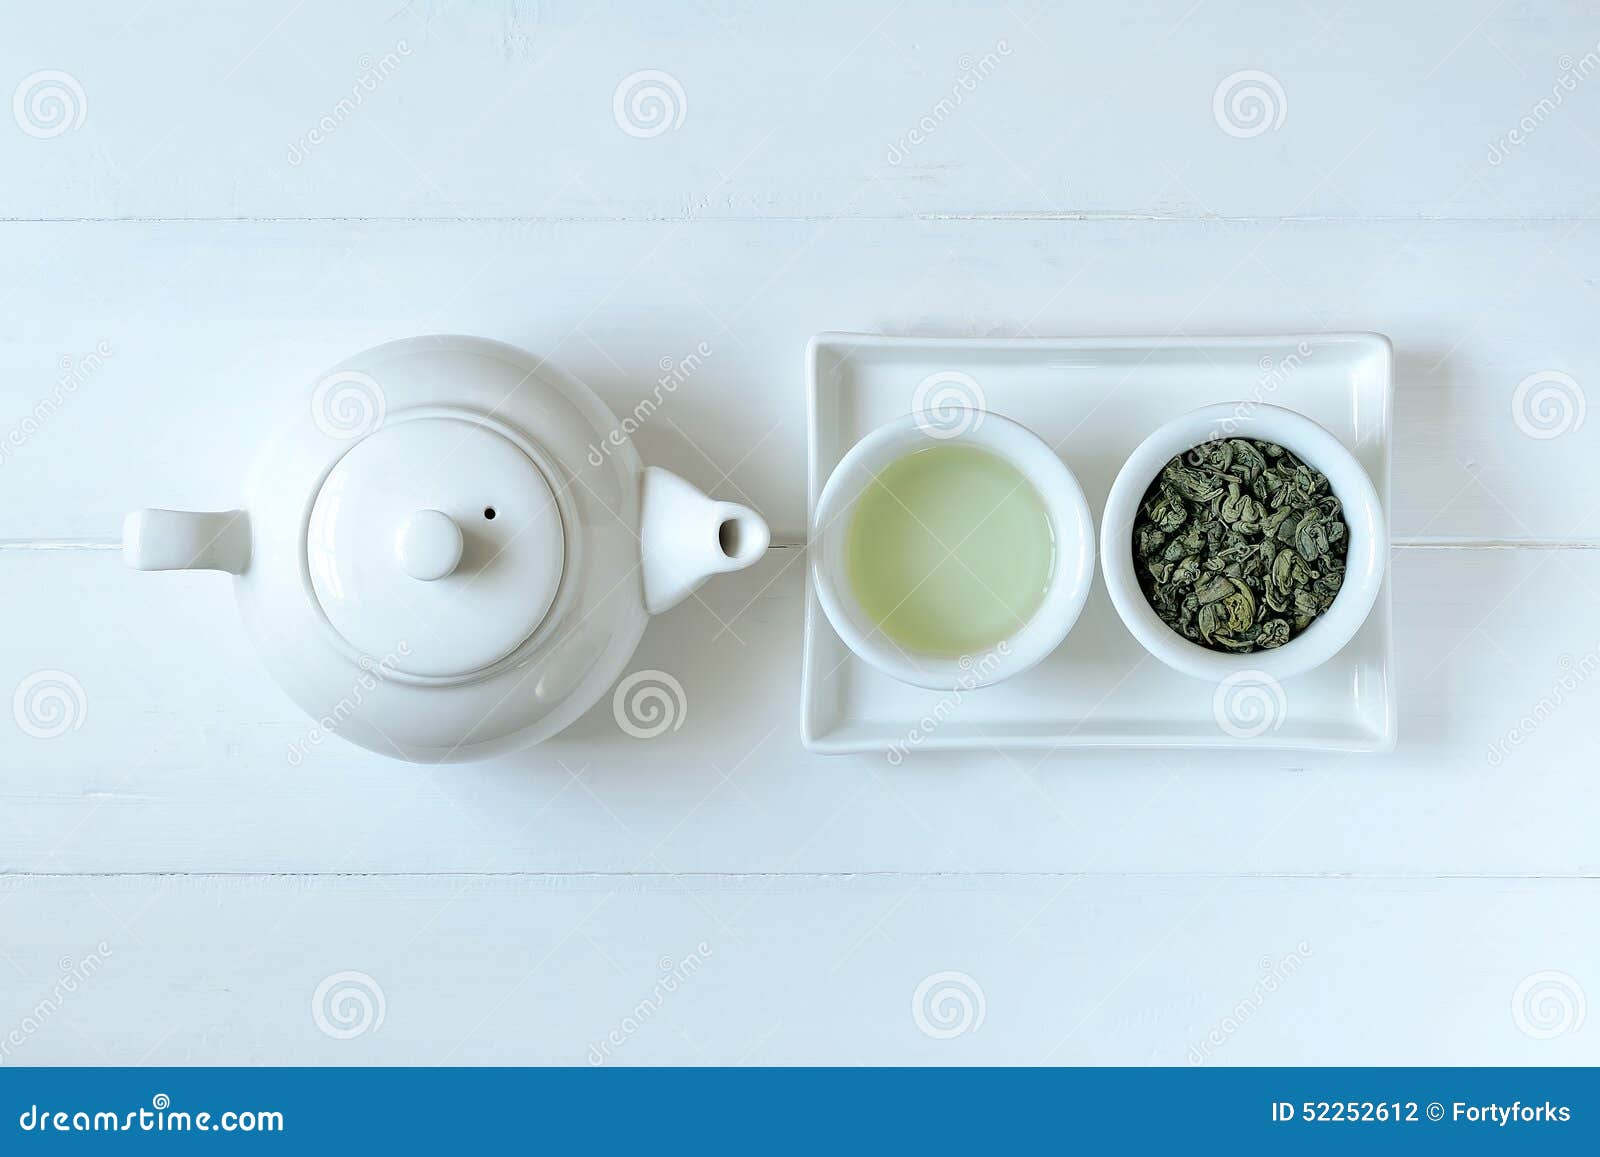 green tea concept